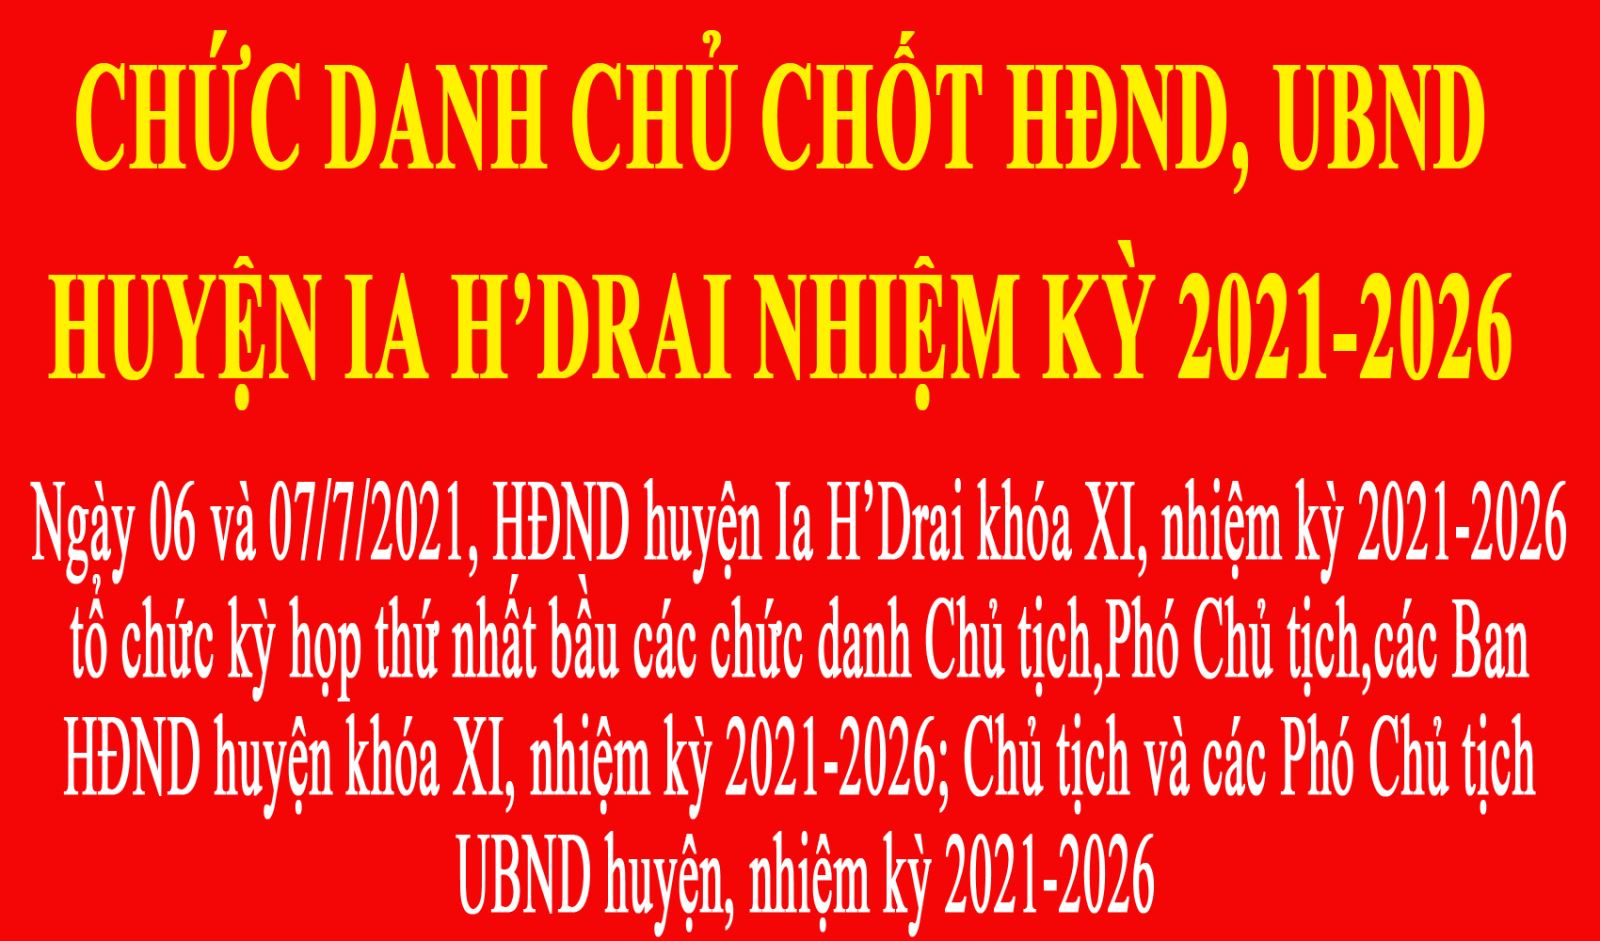 CHỨC DANH CHỦ CHỐT HĐND, UBND HUYỆN IA H’DRAI NHIỆM KỲ 2021-2026